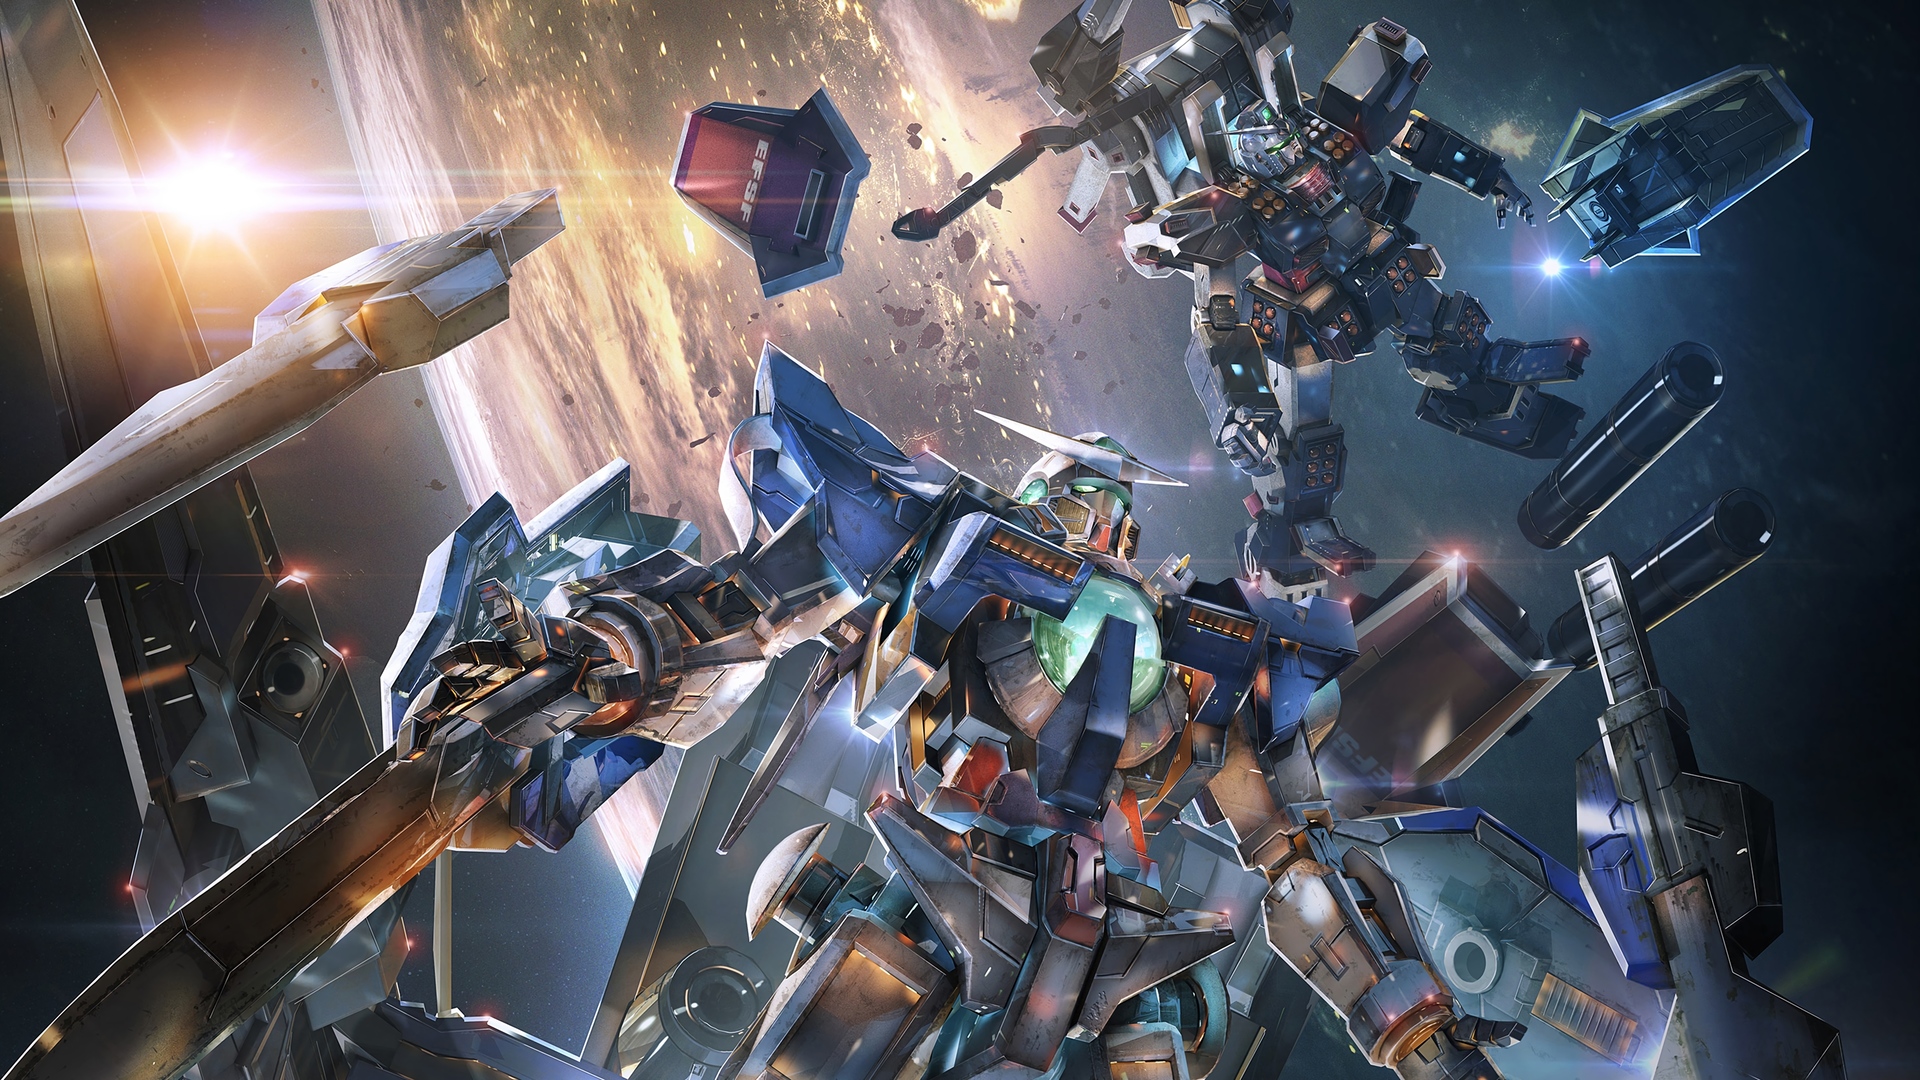 Sẵn sàng tham gia cuộc chiến đỉnh cao giữa các loại robot với Gundam Versus? Chơi ngay thử thách này và cảm nhận trận đấu đầy kịch tính, sắc nét với đồ họa tuyệt đẹp. Cùng trở thành kẻ thống trị trong thế giới game robot đối kháng Gundam Versus nào!